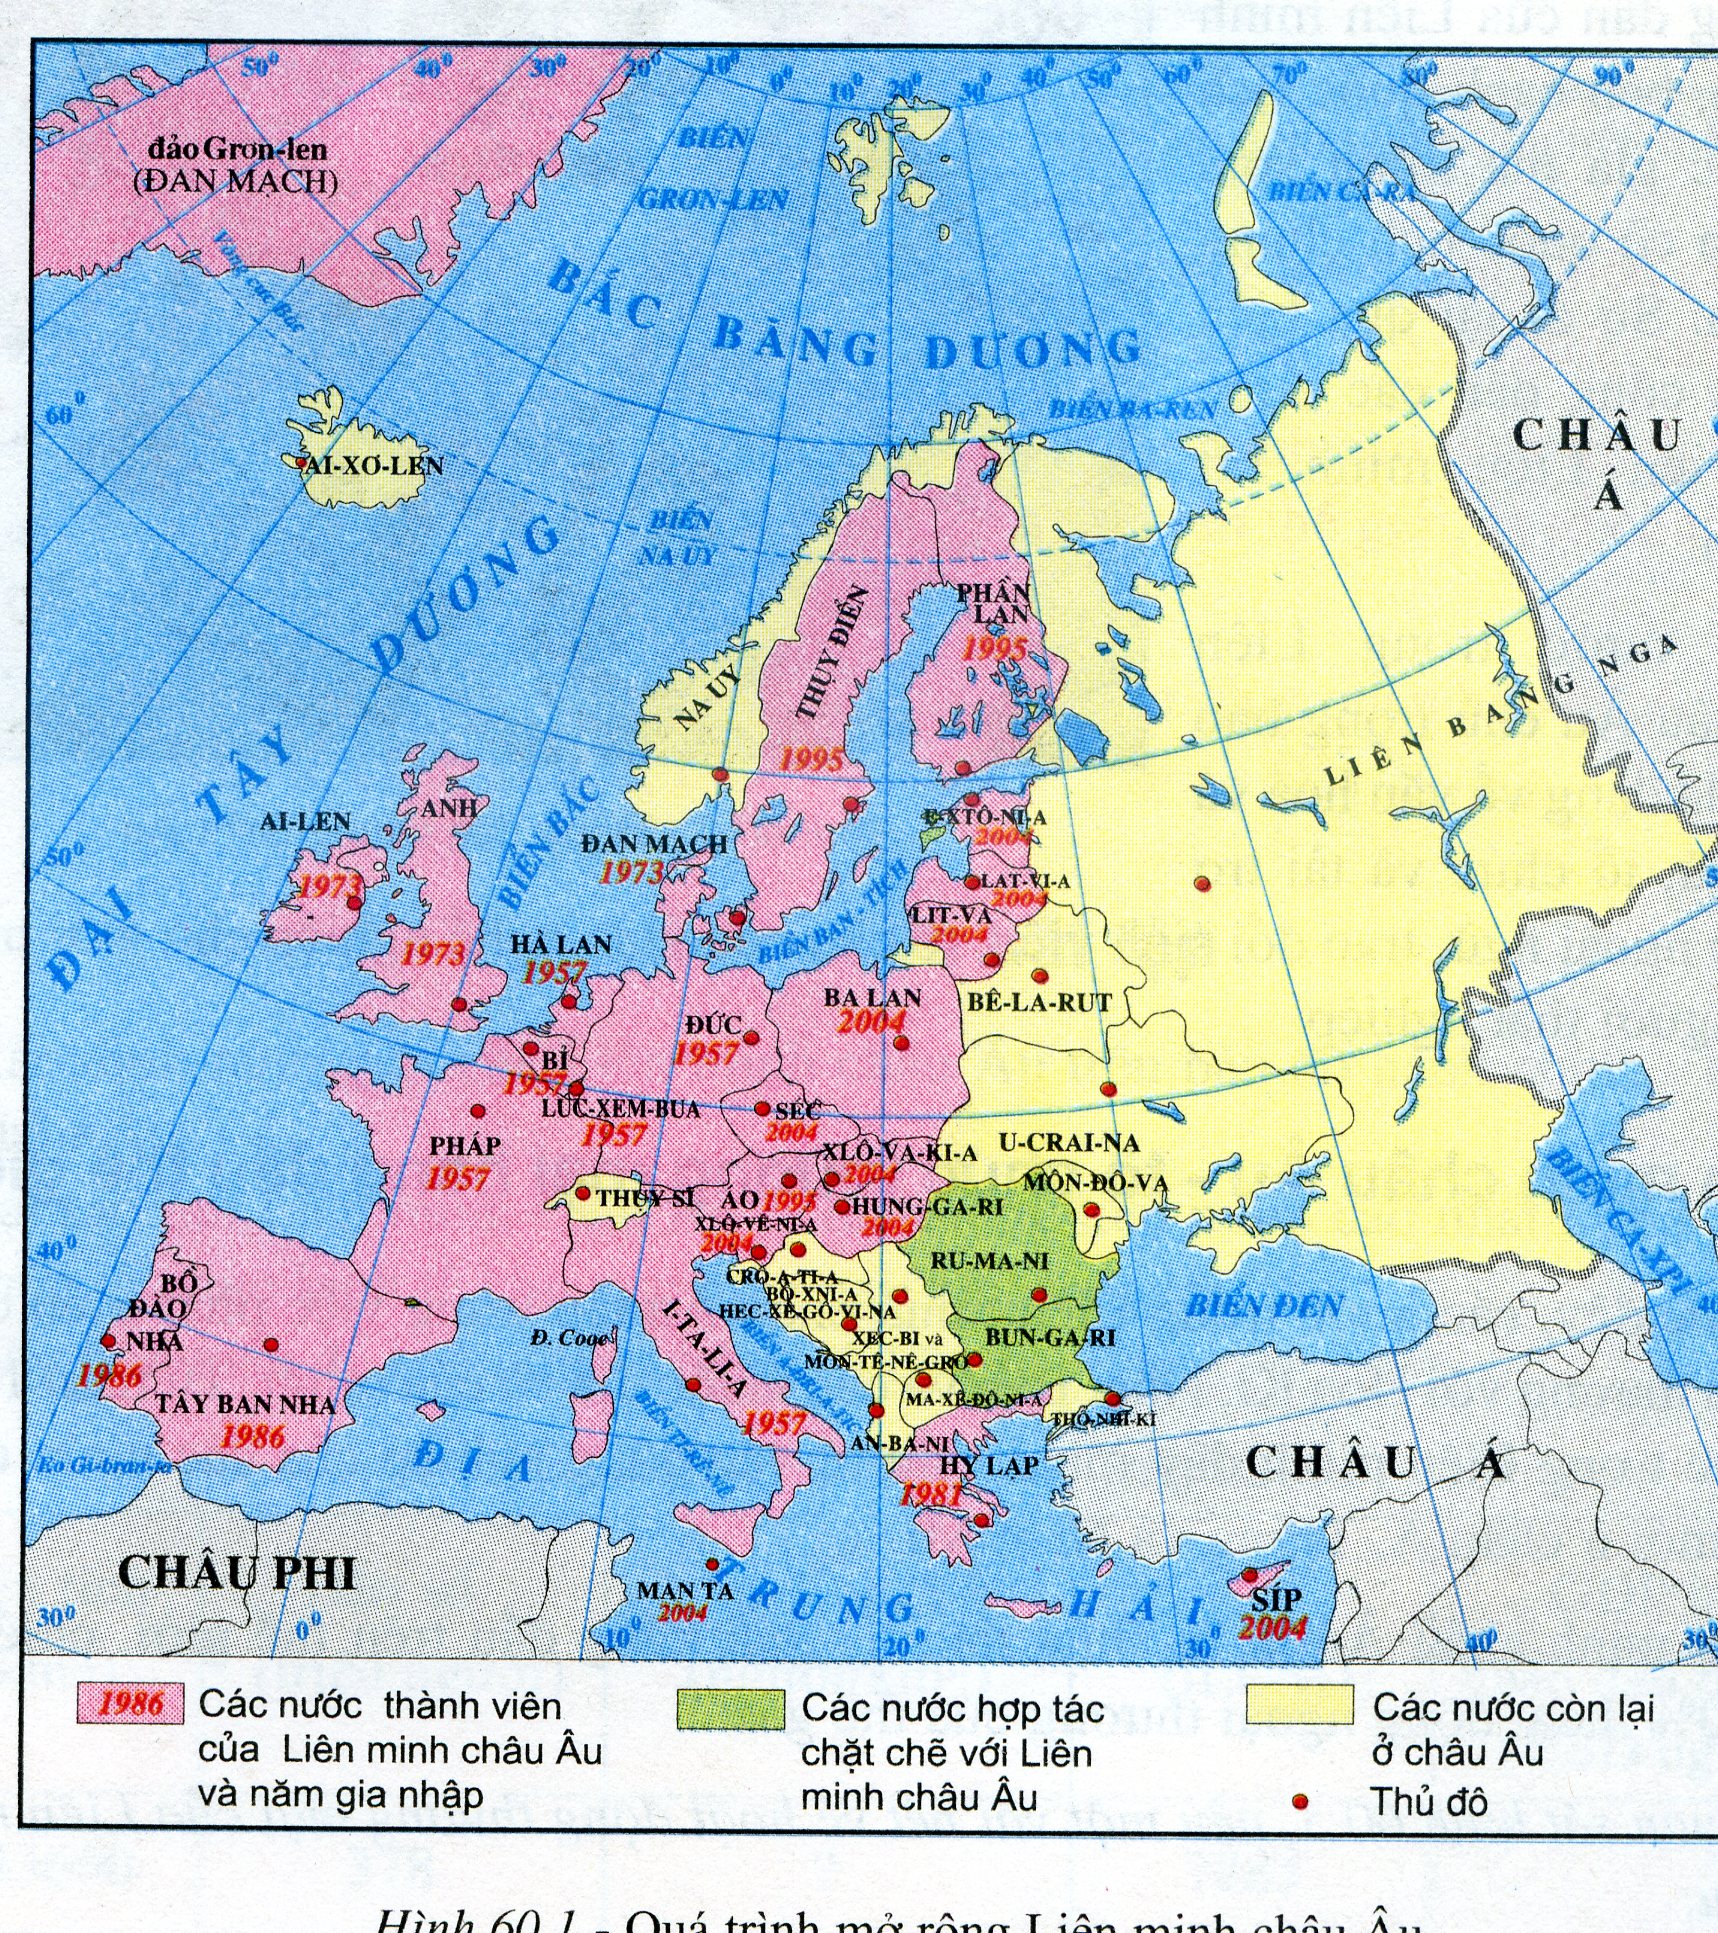 Bản đồ các nước châu Âu: Được biết đến như là một tập hợp các quốc gia và vùng lãnh thổ đa dạng, châu Âu là một điểm đến hấp dẫn cho những người yêu thích lịch sử, văn hóa và kiến trúc. Hãy xem qua những hình ảnh tuyệt đẹp về các địa điểm lịch sử quan trọng và những khu vực đầy sắc màu của châu Âu.